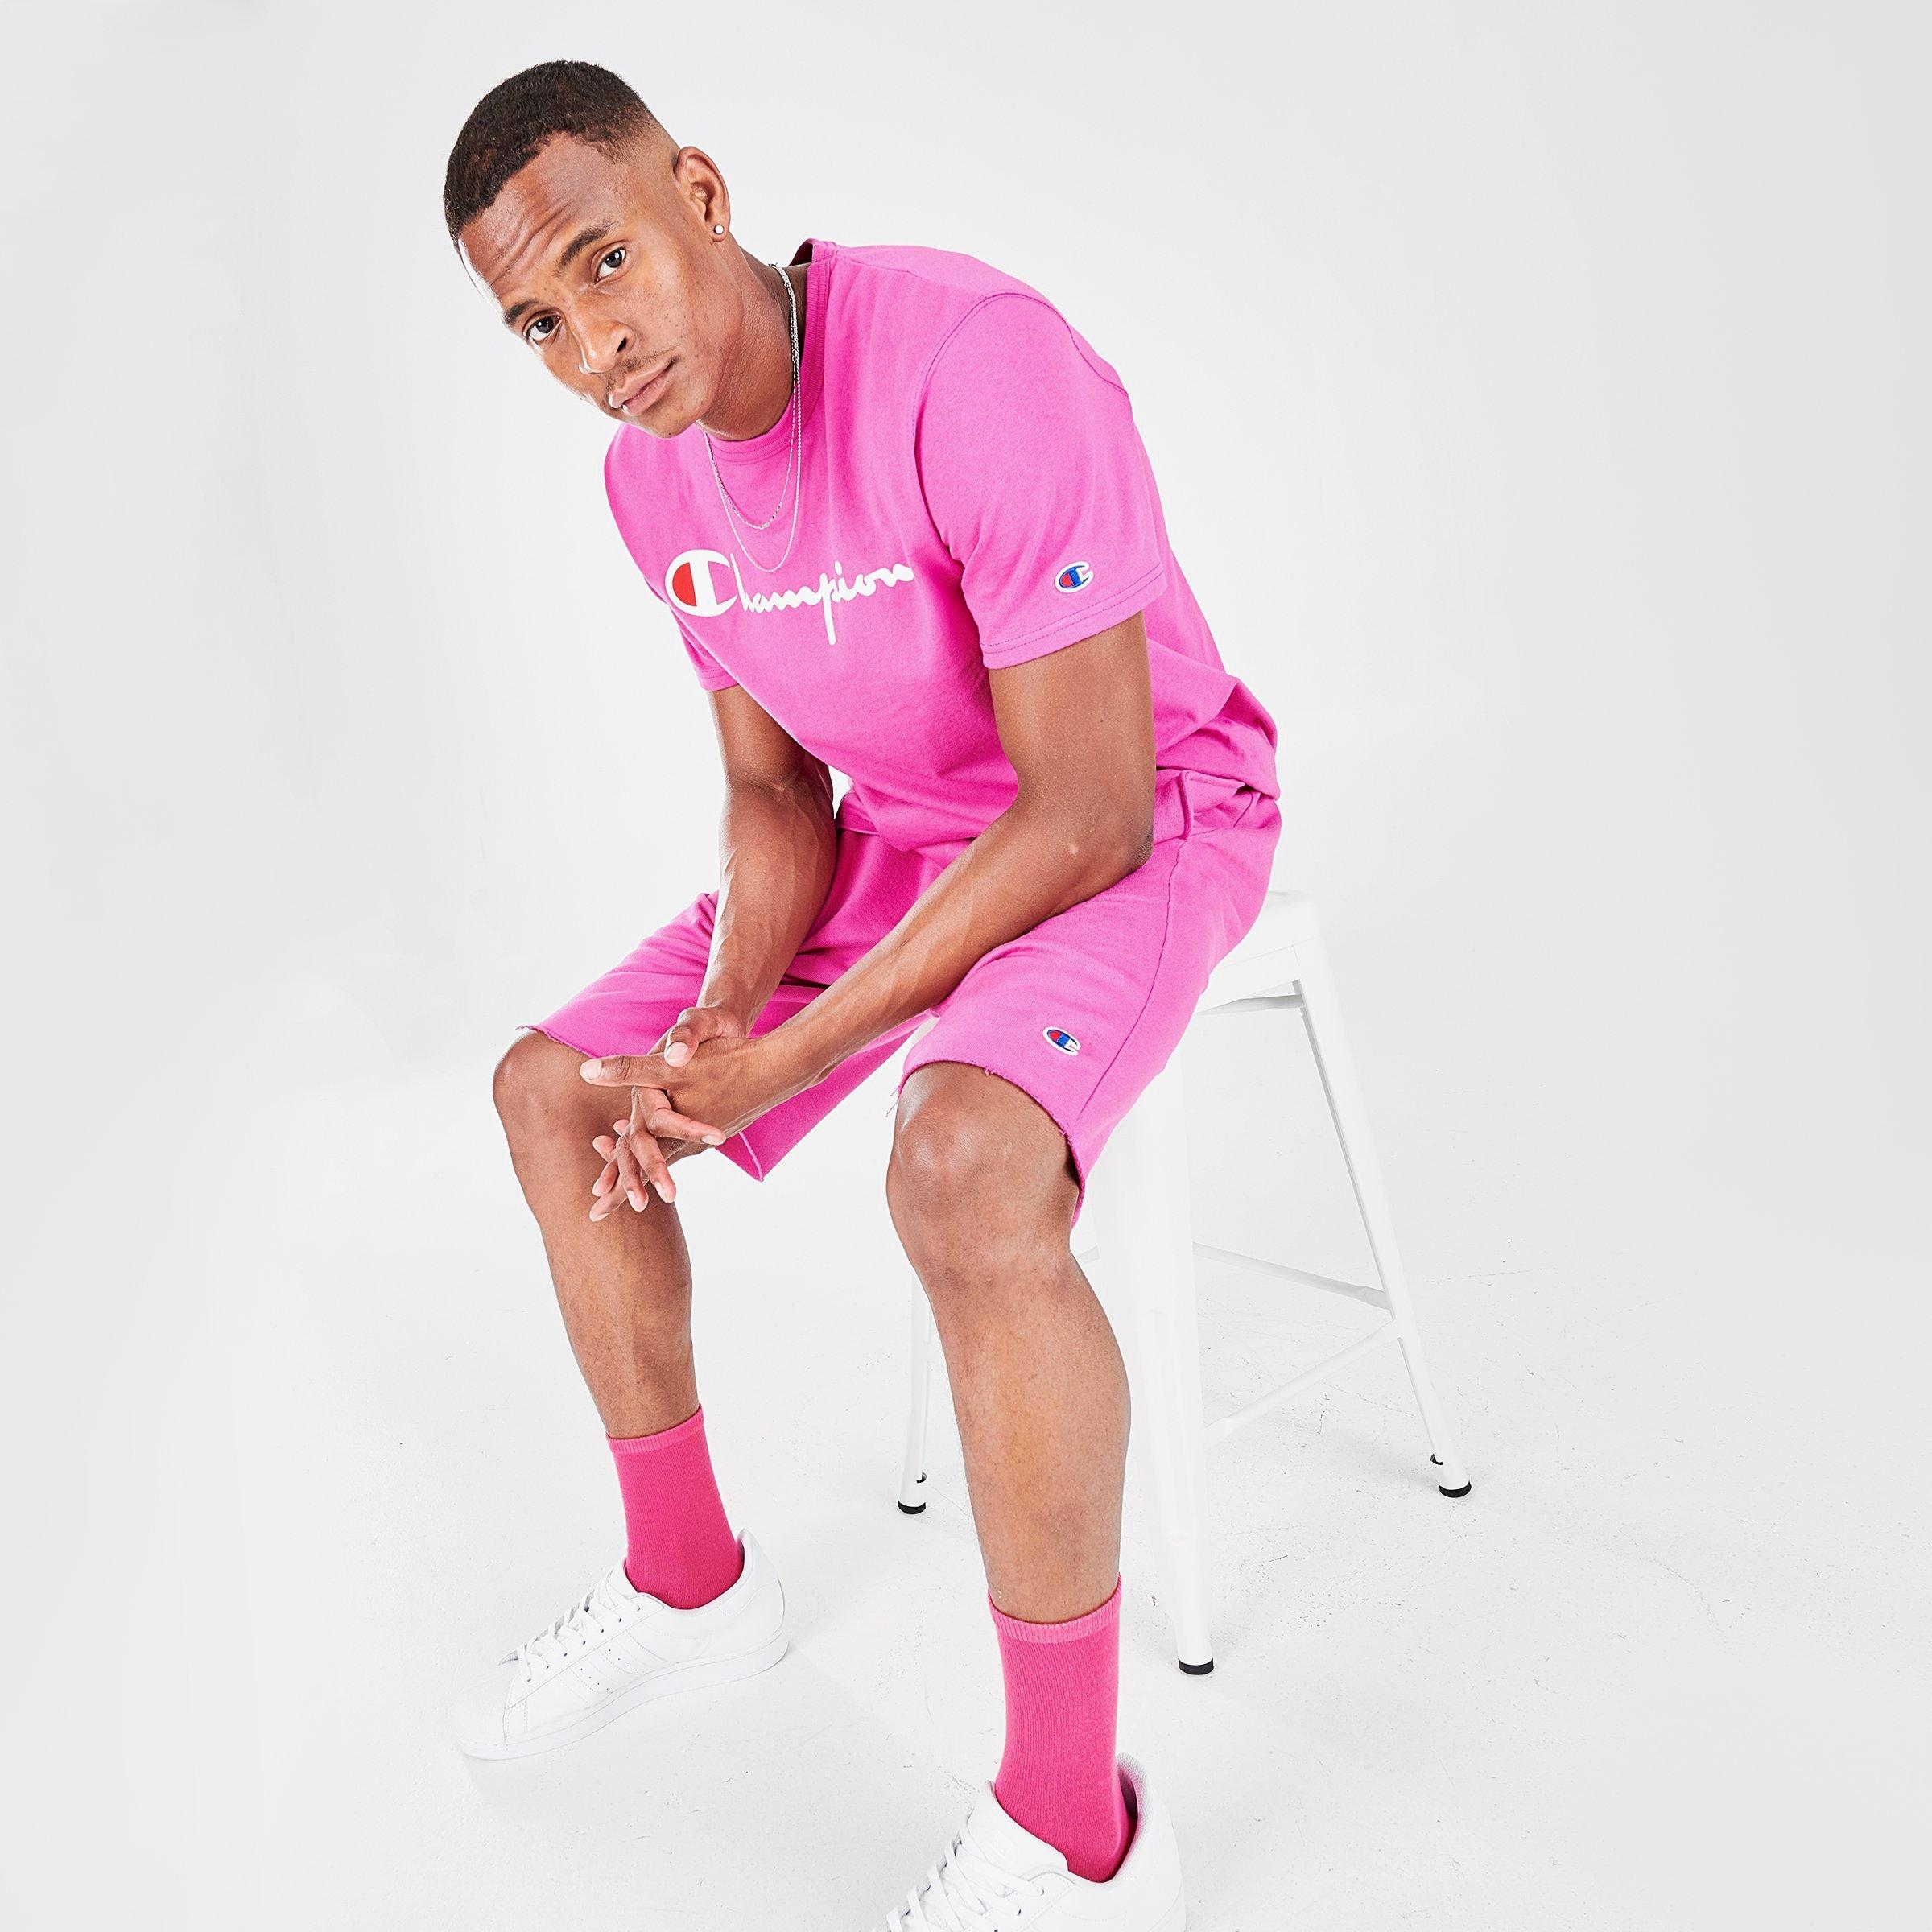 pink champion shorts mens